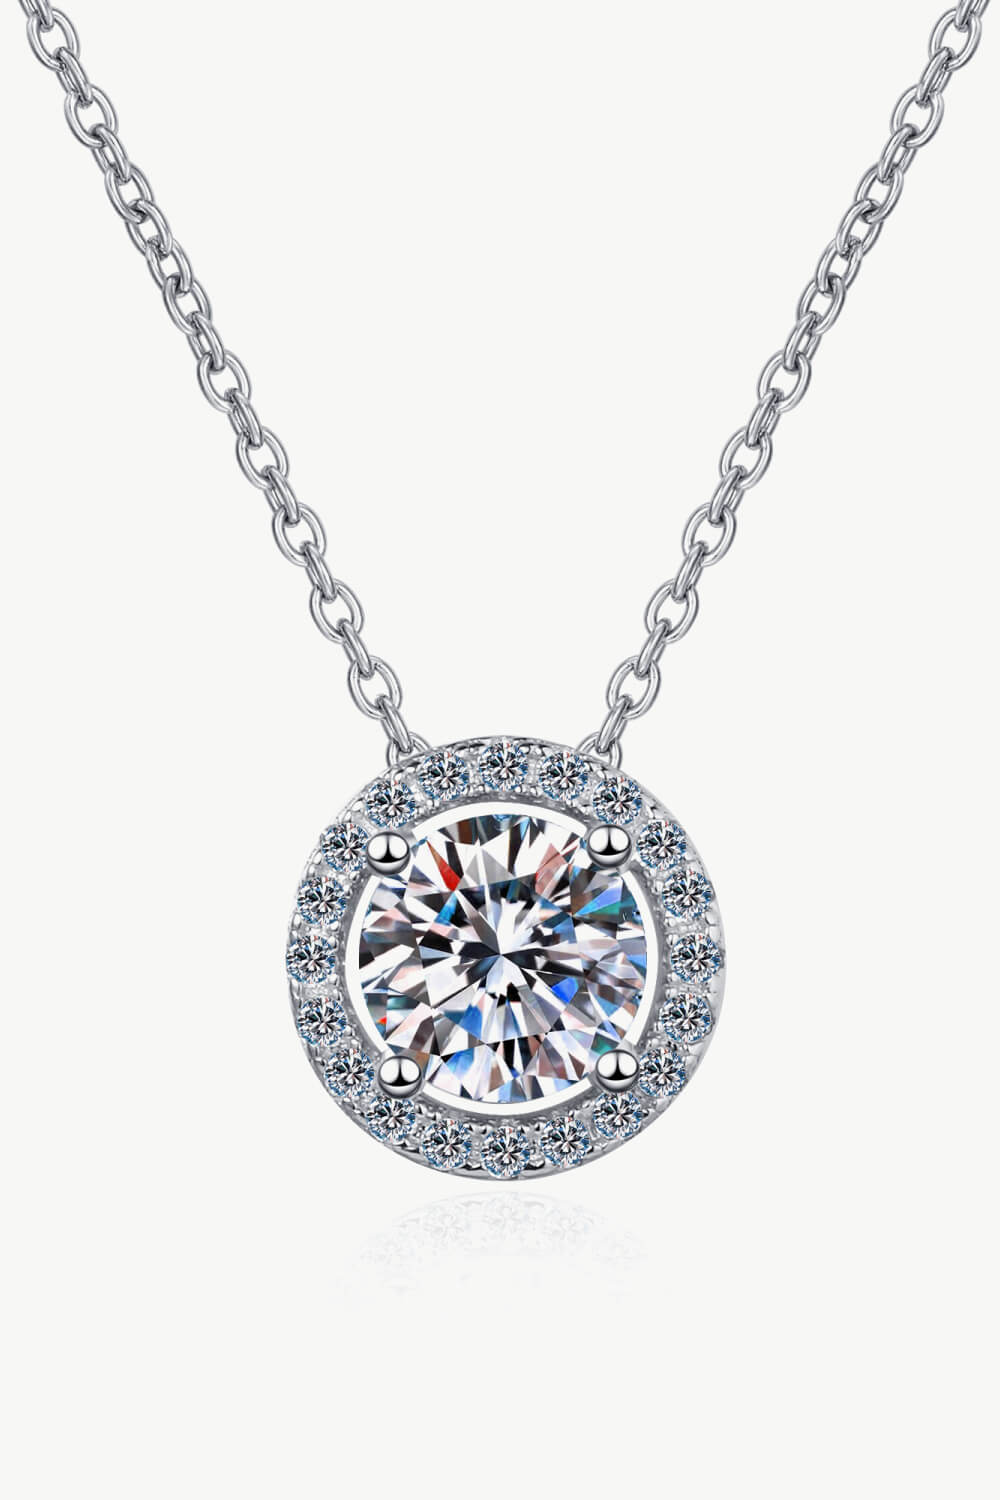 1 Carat Moissanite Round Pendant Chain Necklace - DromedarShop.com Online Boutique